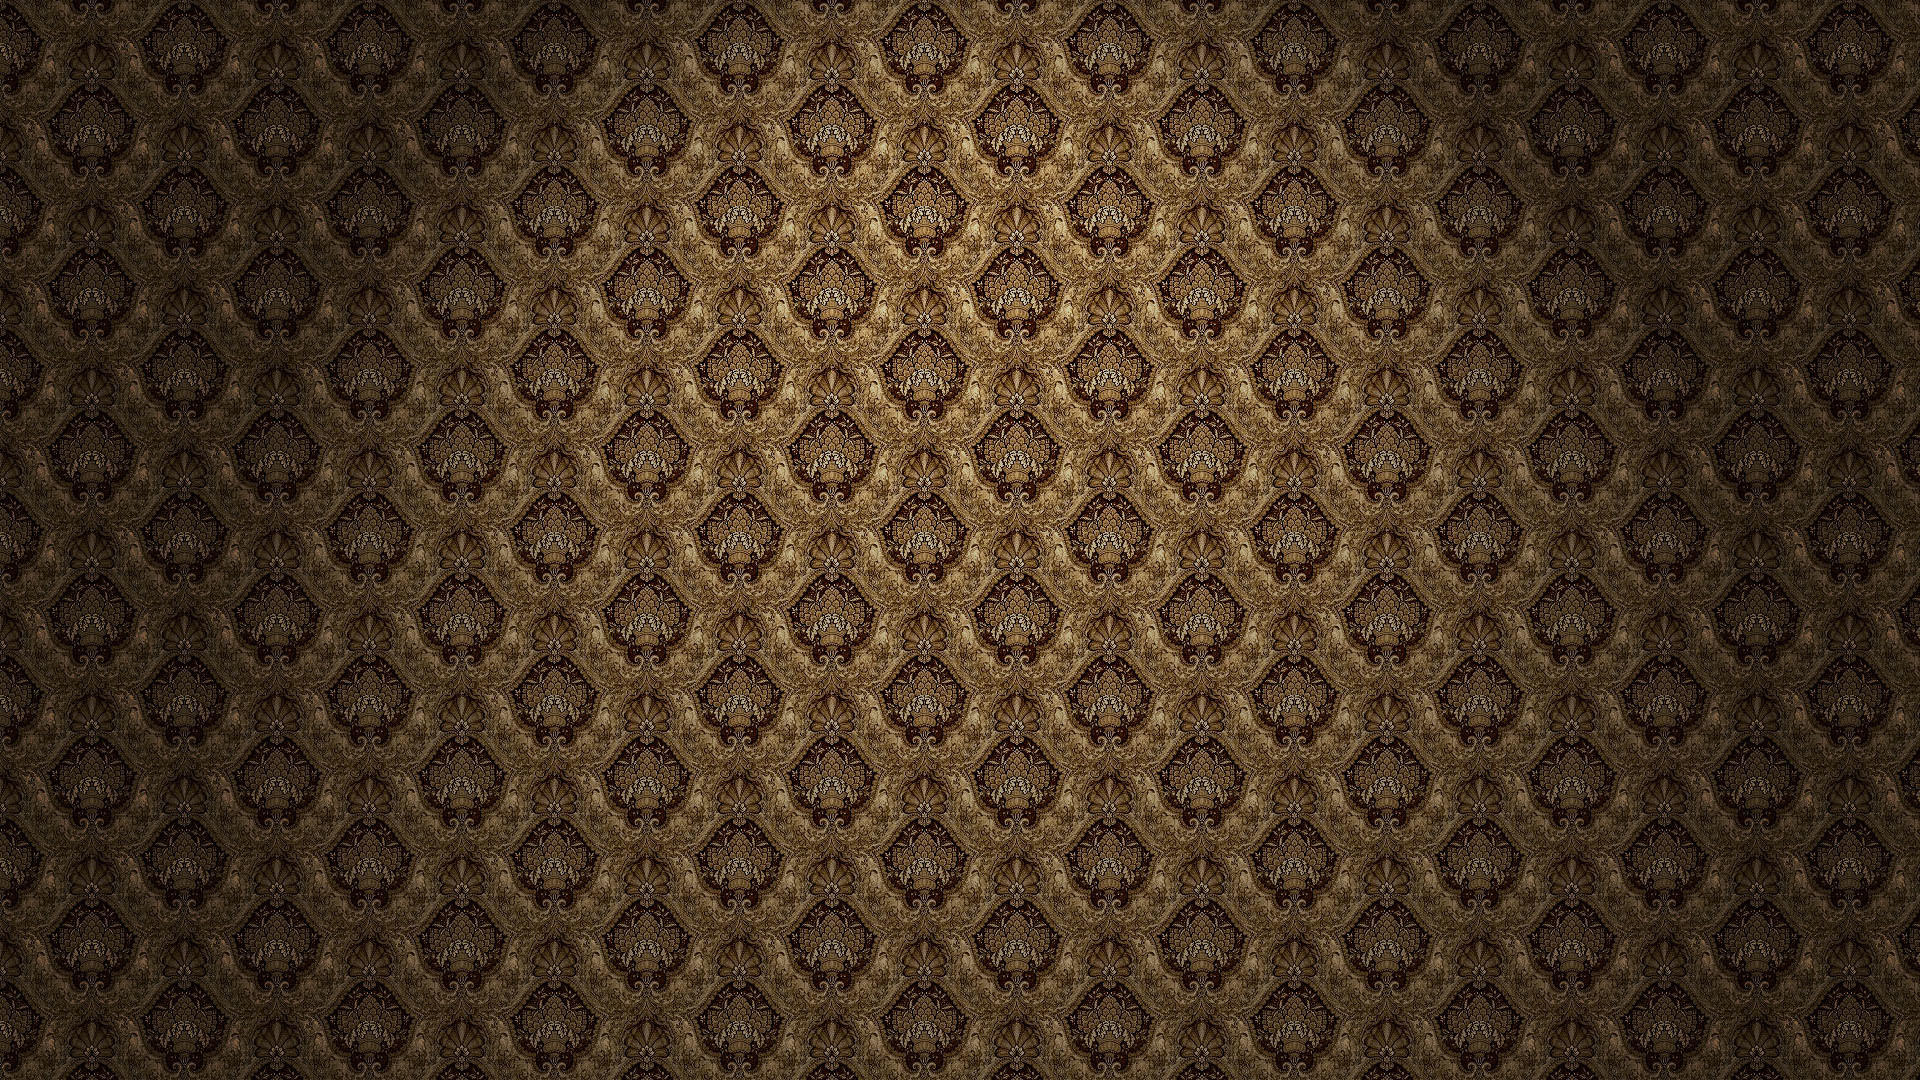 1920x1080 patterned wallpaper 2017 Grasscloth Wallpaper 